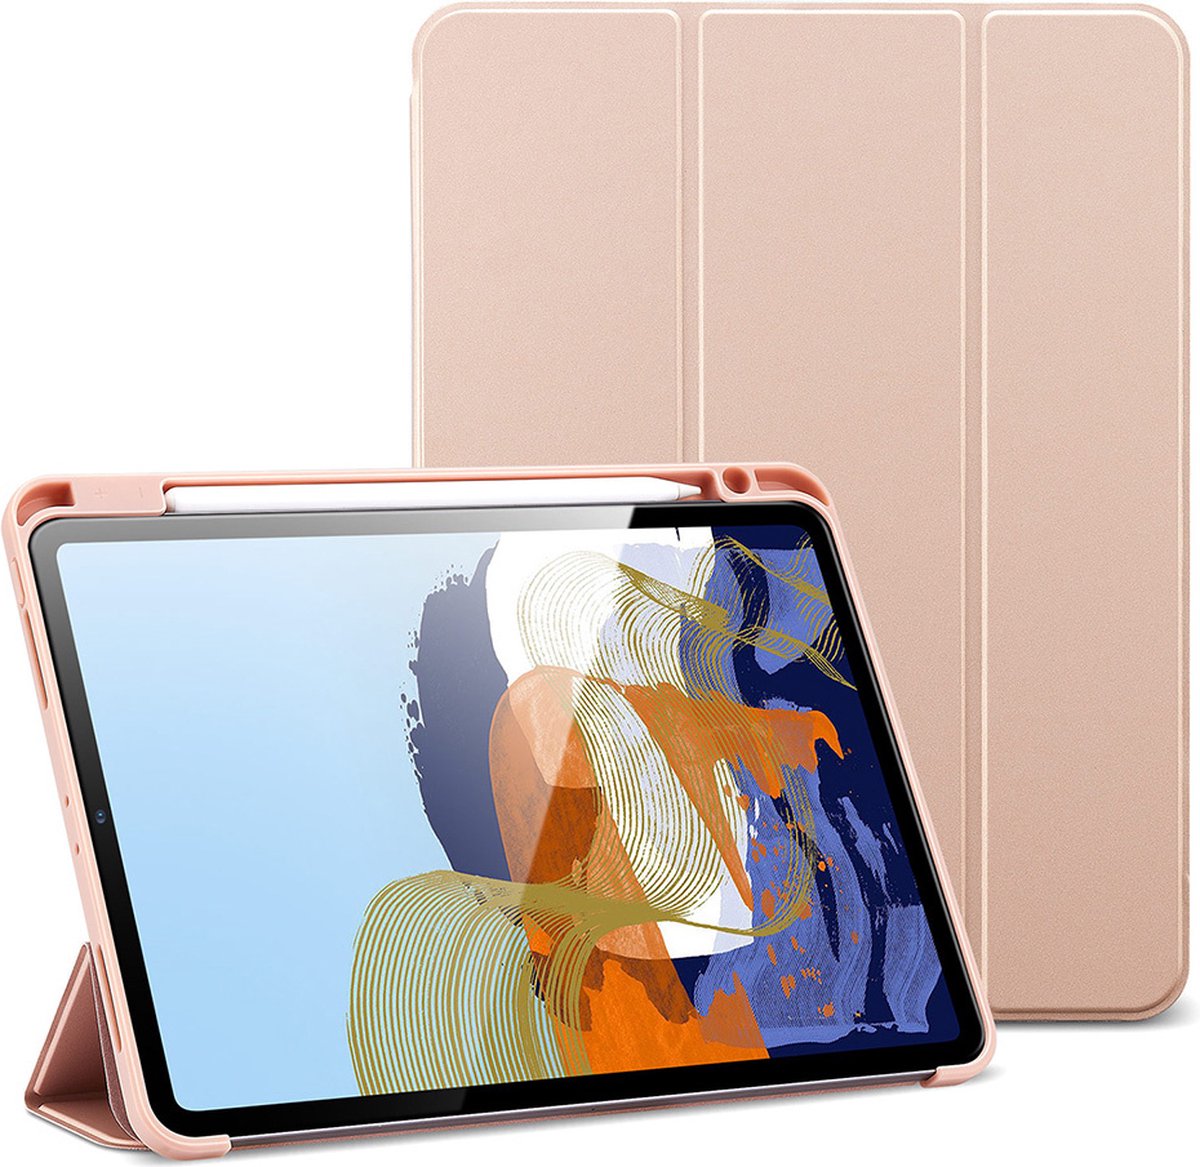 Coque transparente ESR compatible avec iPad Pro 11 pouces 2021 (3e